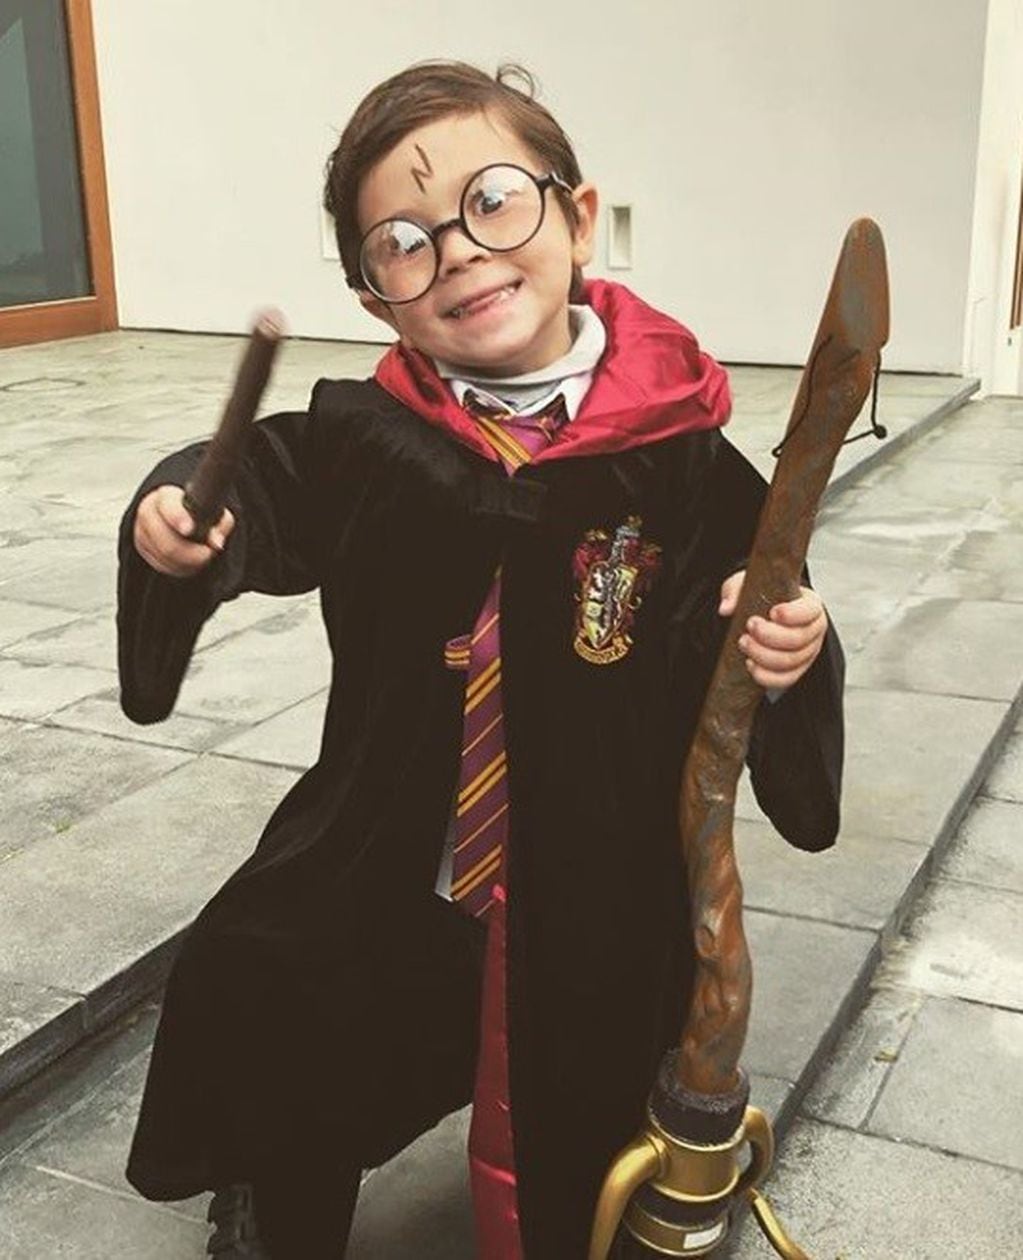 Los hijos de Messi celebraron carnaval disfrazados de los personajes de Harry Potter. (Instagram)